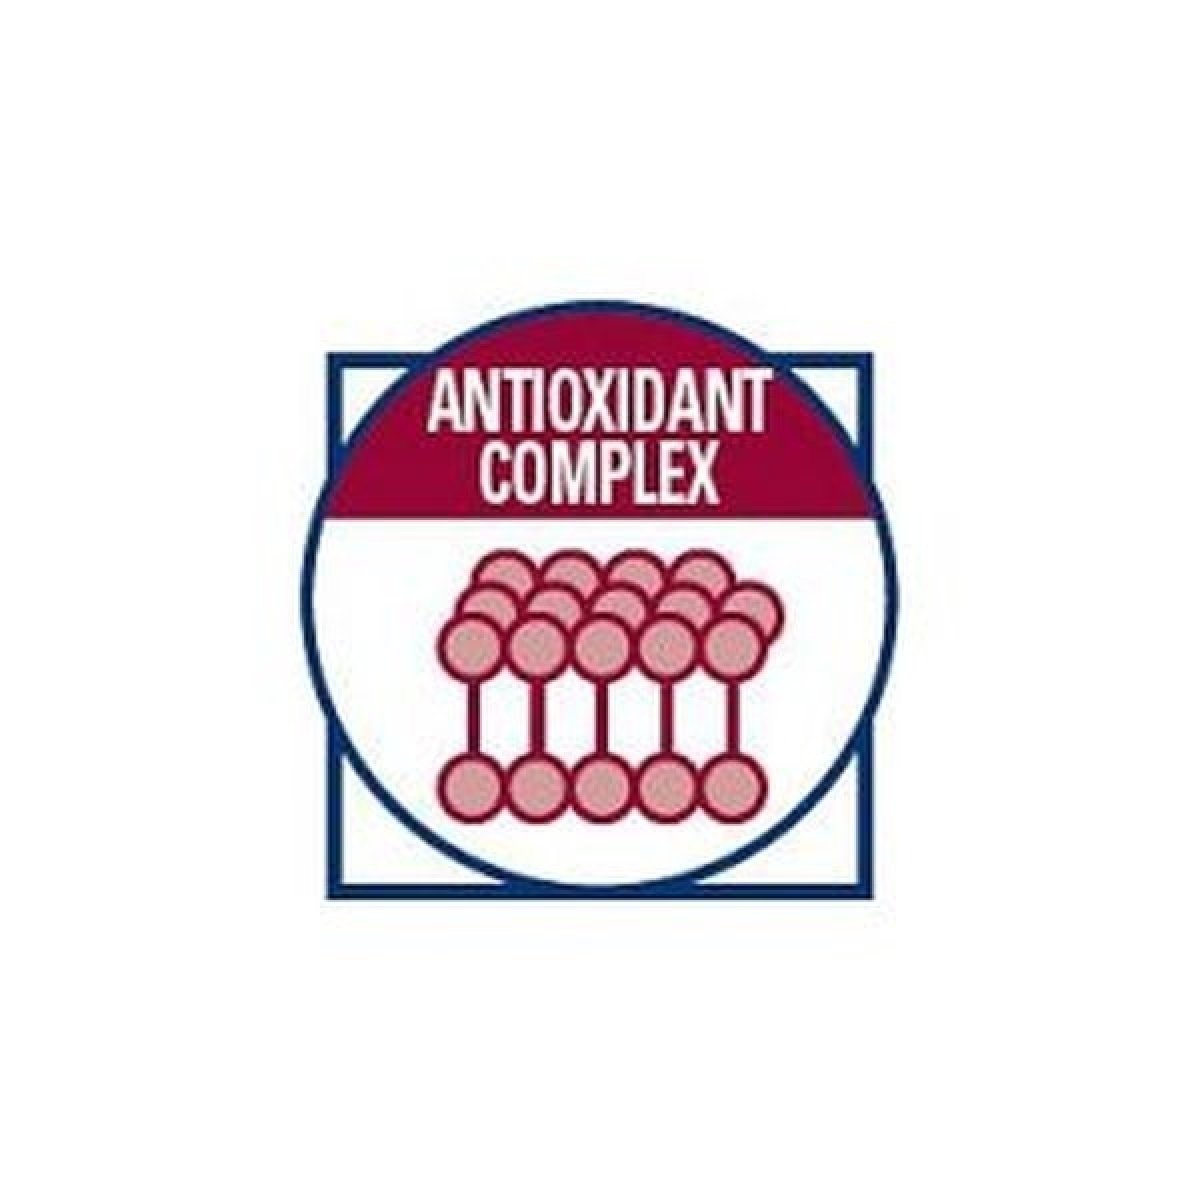 Obohatené o komplex antioxidantov